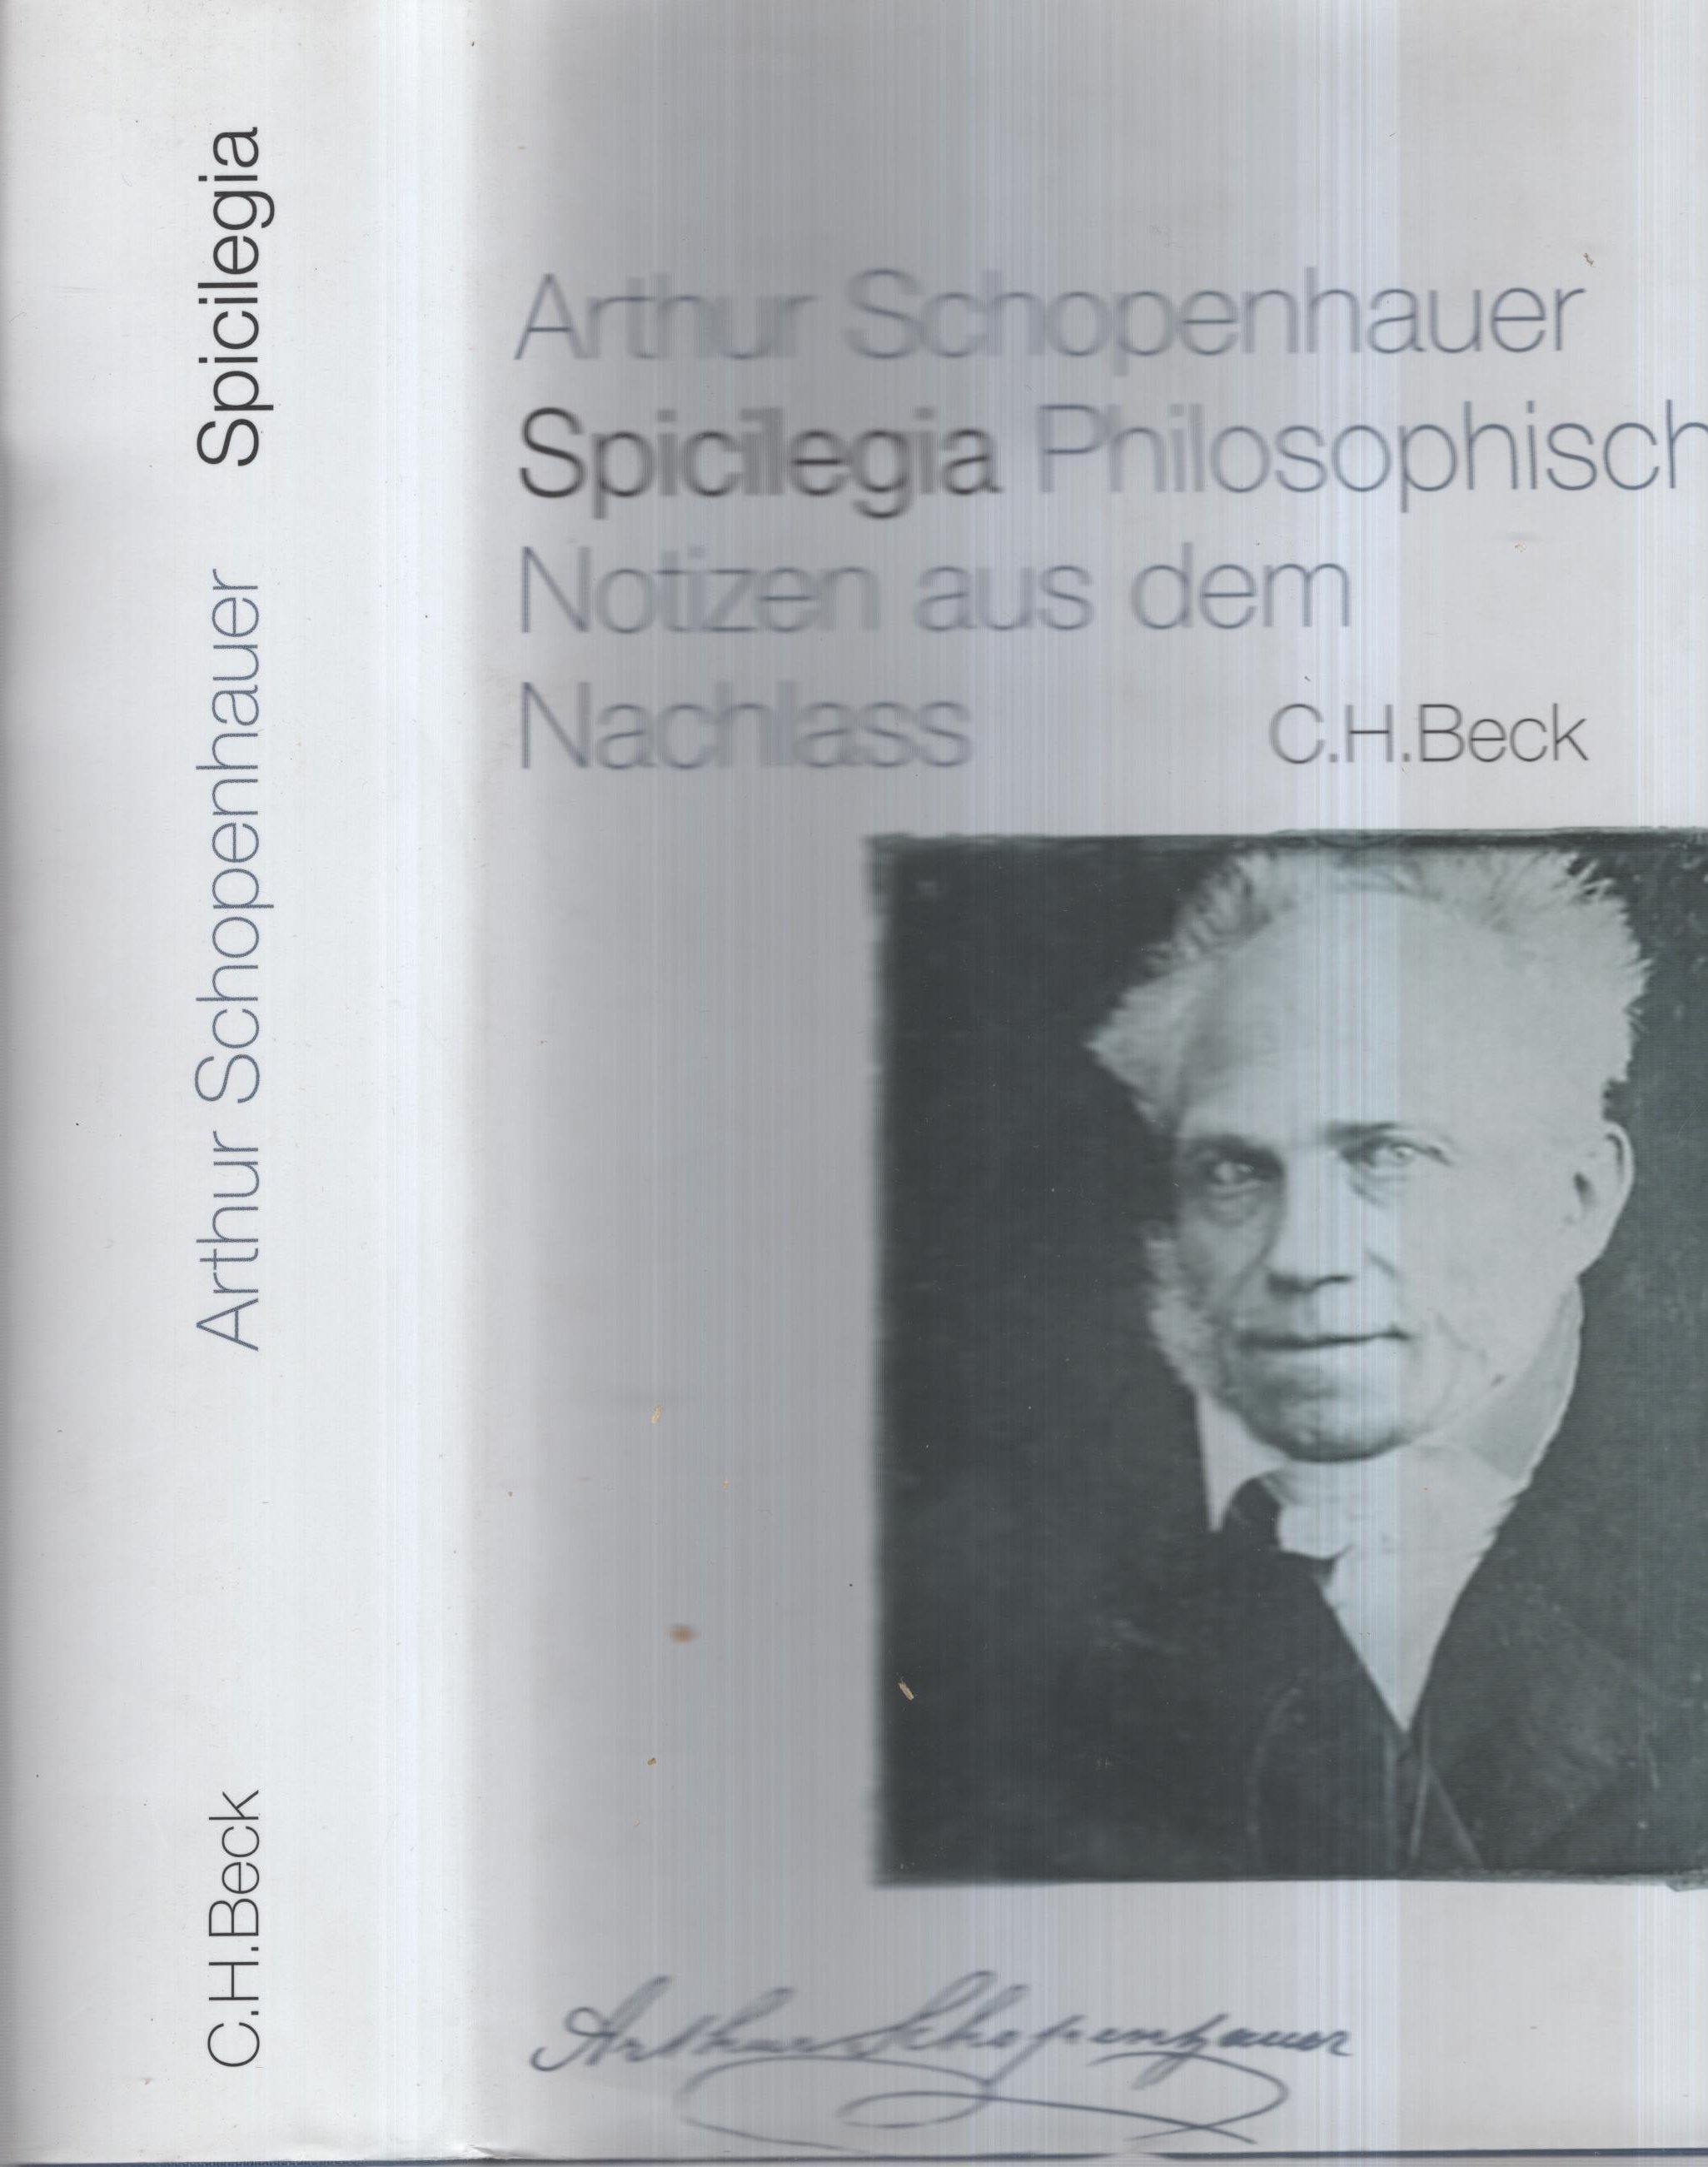 Spicilegia Philosophische Notizen aus dem Nachlass - Arthur Schopenhauer - Ernst Ziegler - Anke Brumloop - Manfred Wagner - Thomas Regehly